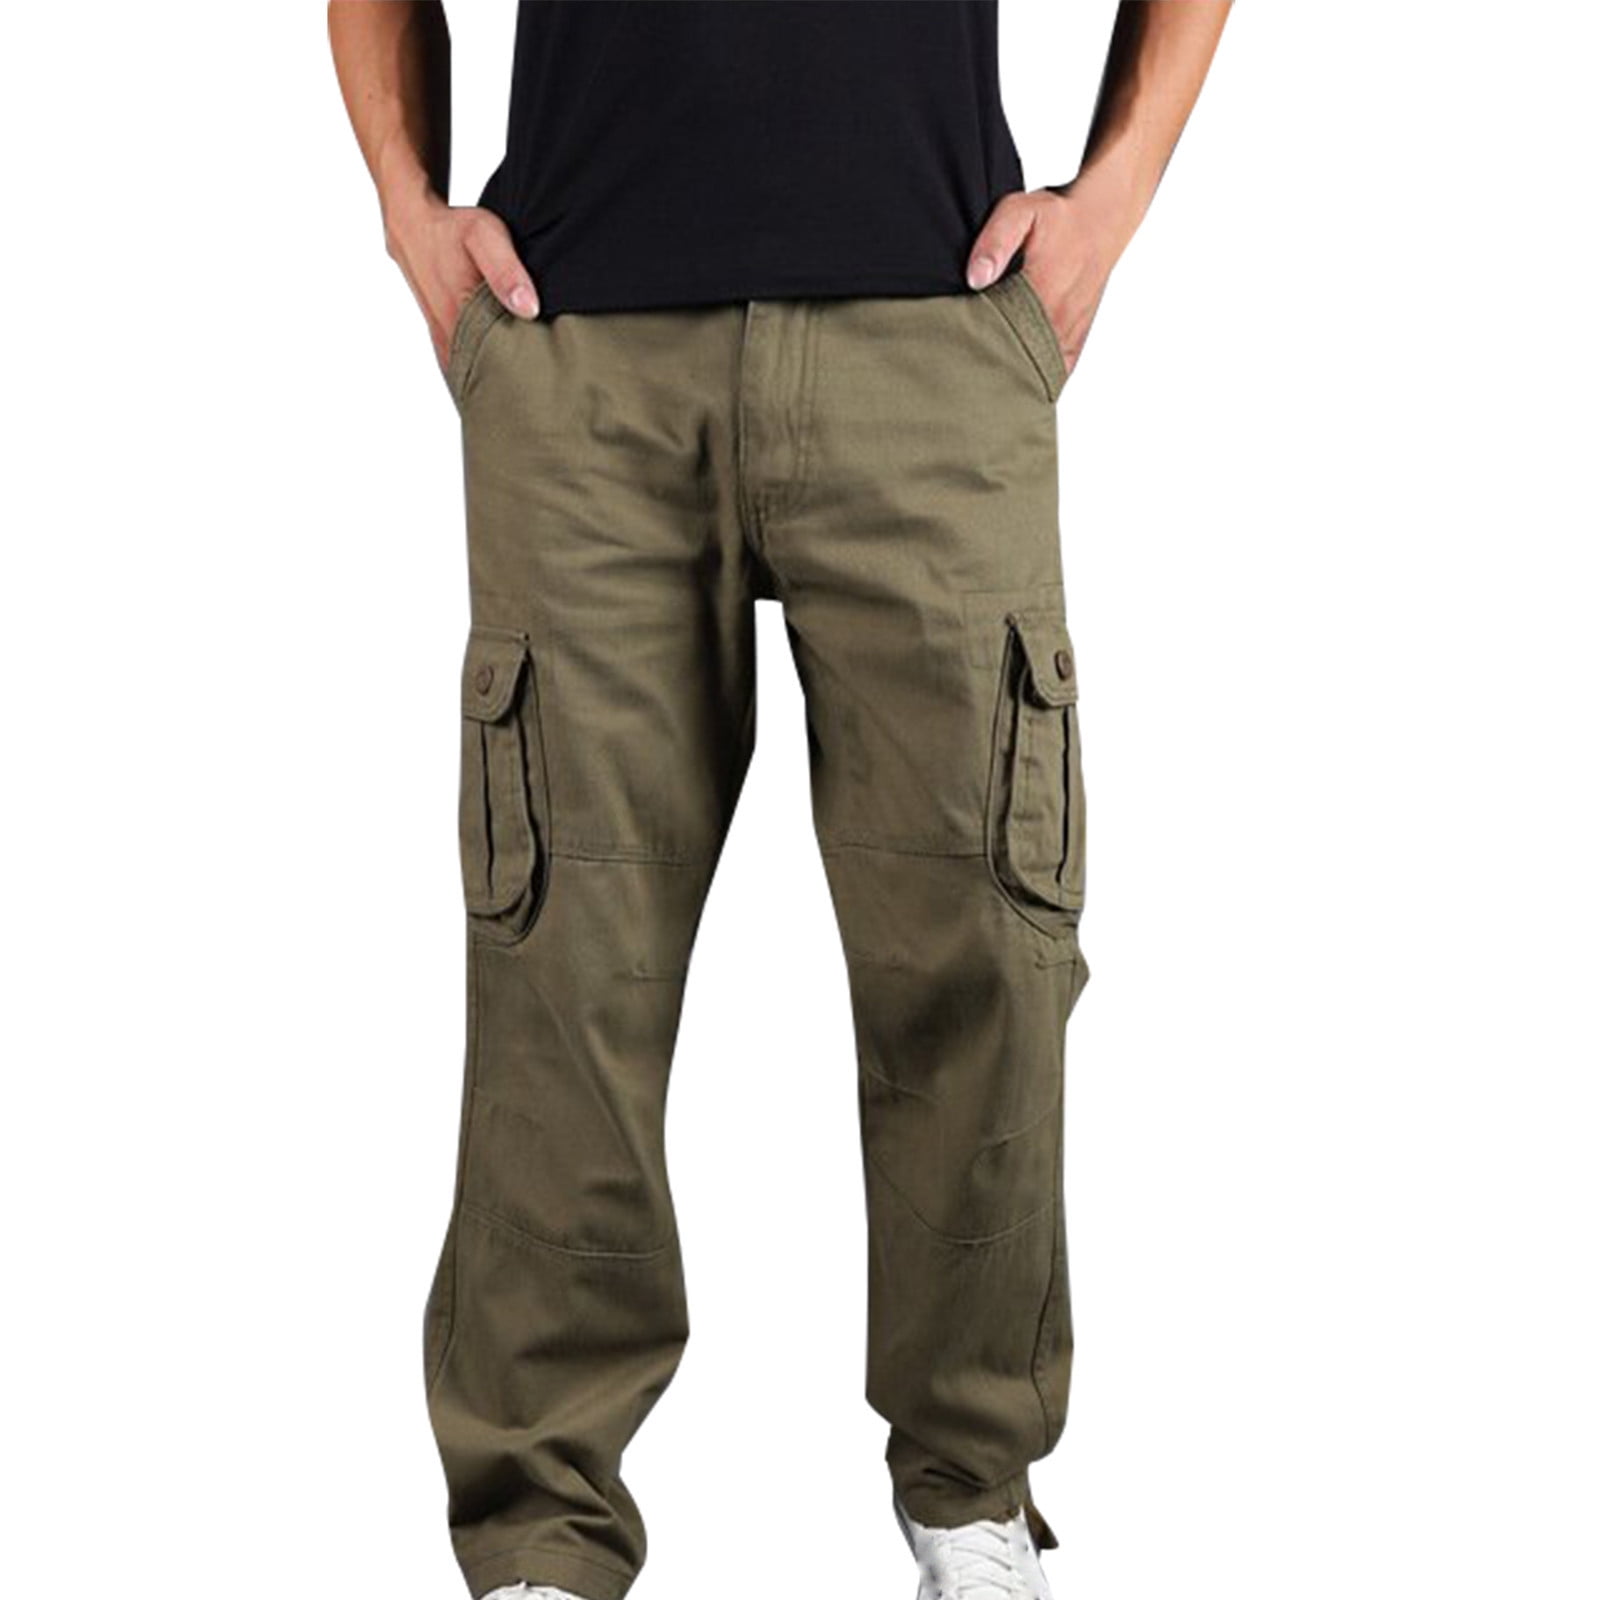 Plus Size 6XL-M Mens Suit Pants High Quality Men Solid Color Slim Fit Dress  Pants